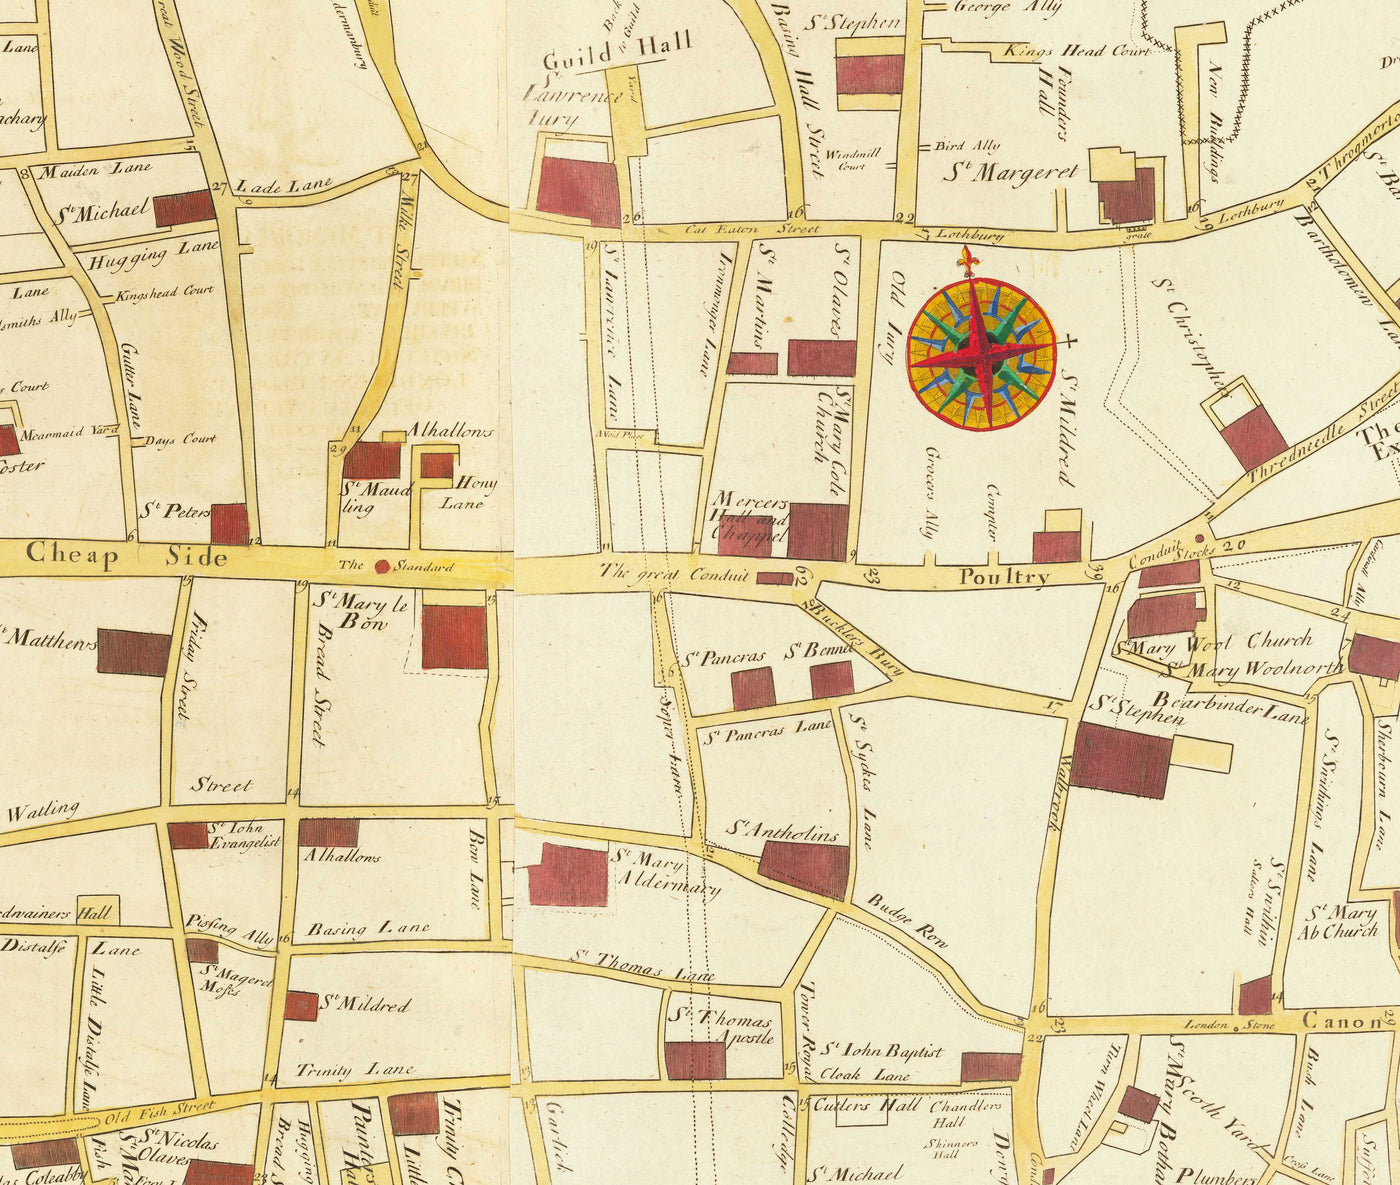 Alte Karte des großen Brandes von London im Jahr 1667 von John Leake & George Vertue - London Bridge, Westminster, Themse, St. Paul's Cathedral, Southwark